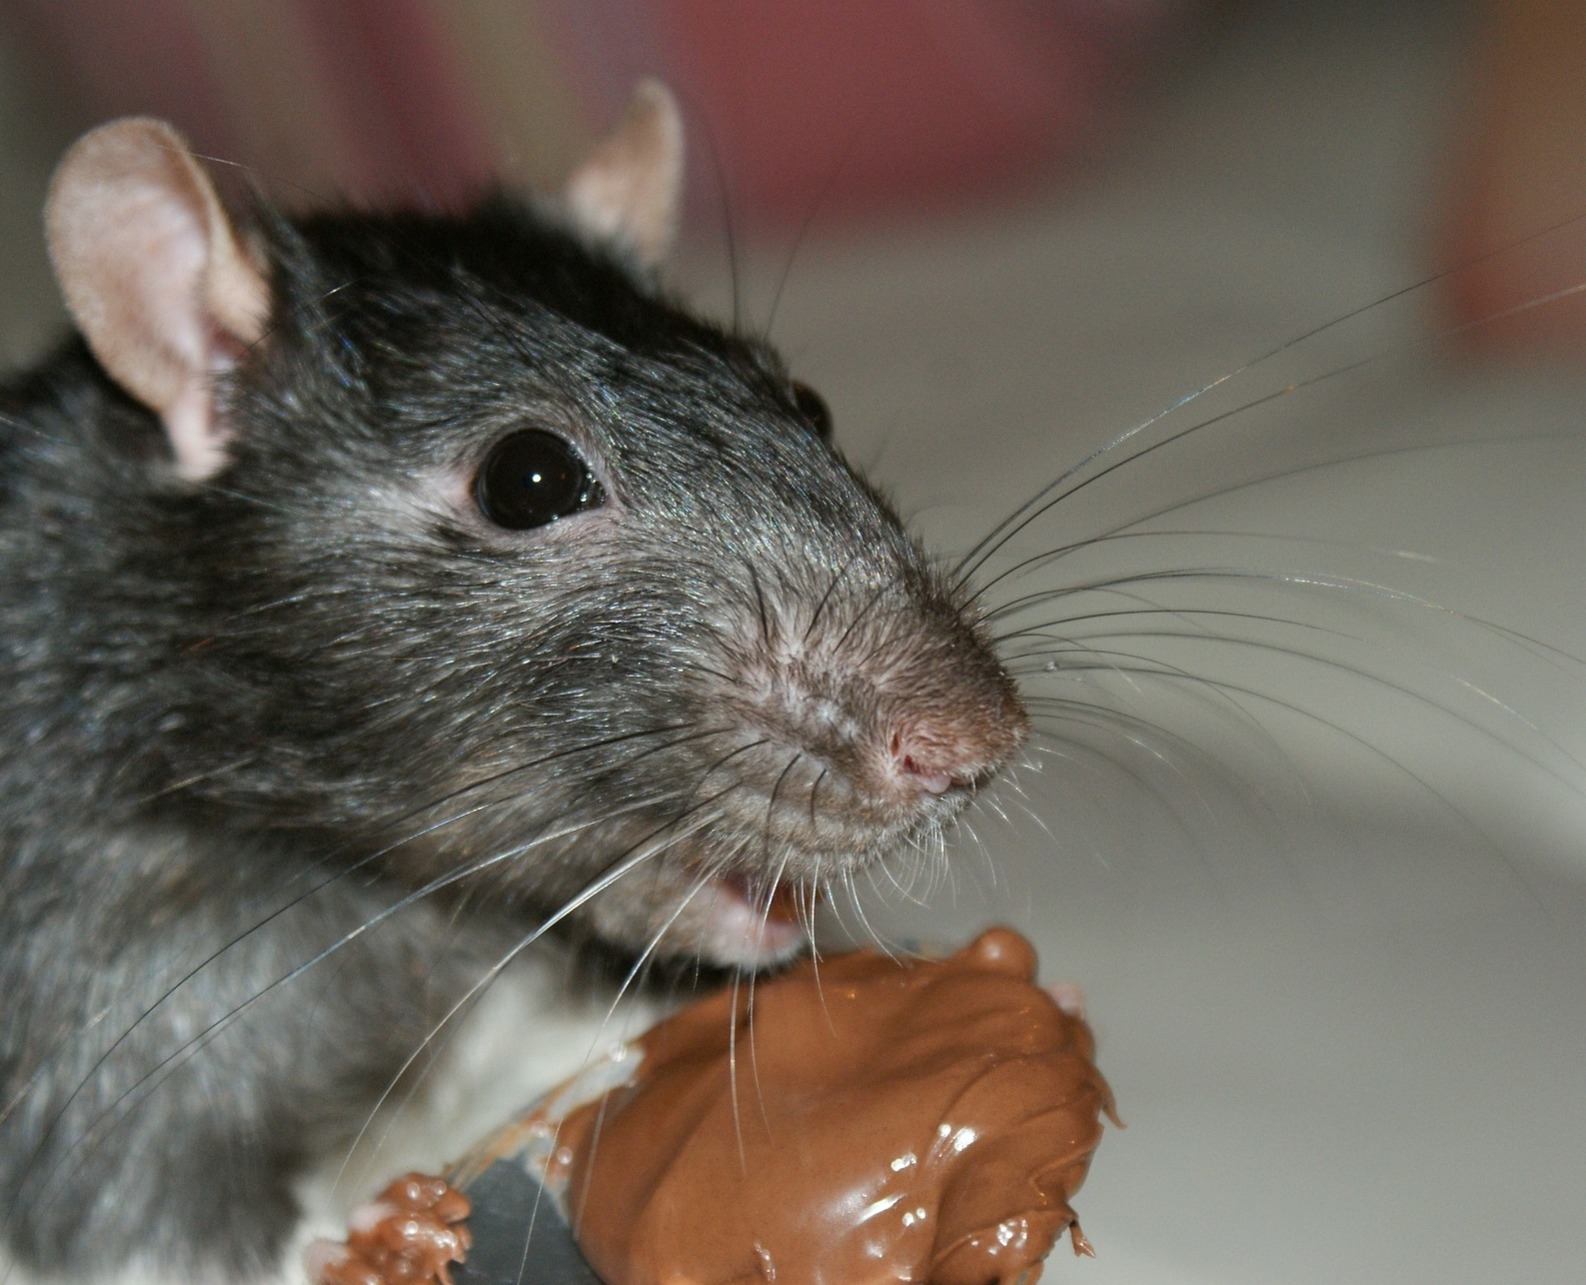 Rat eating